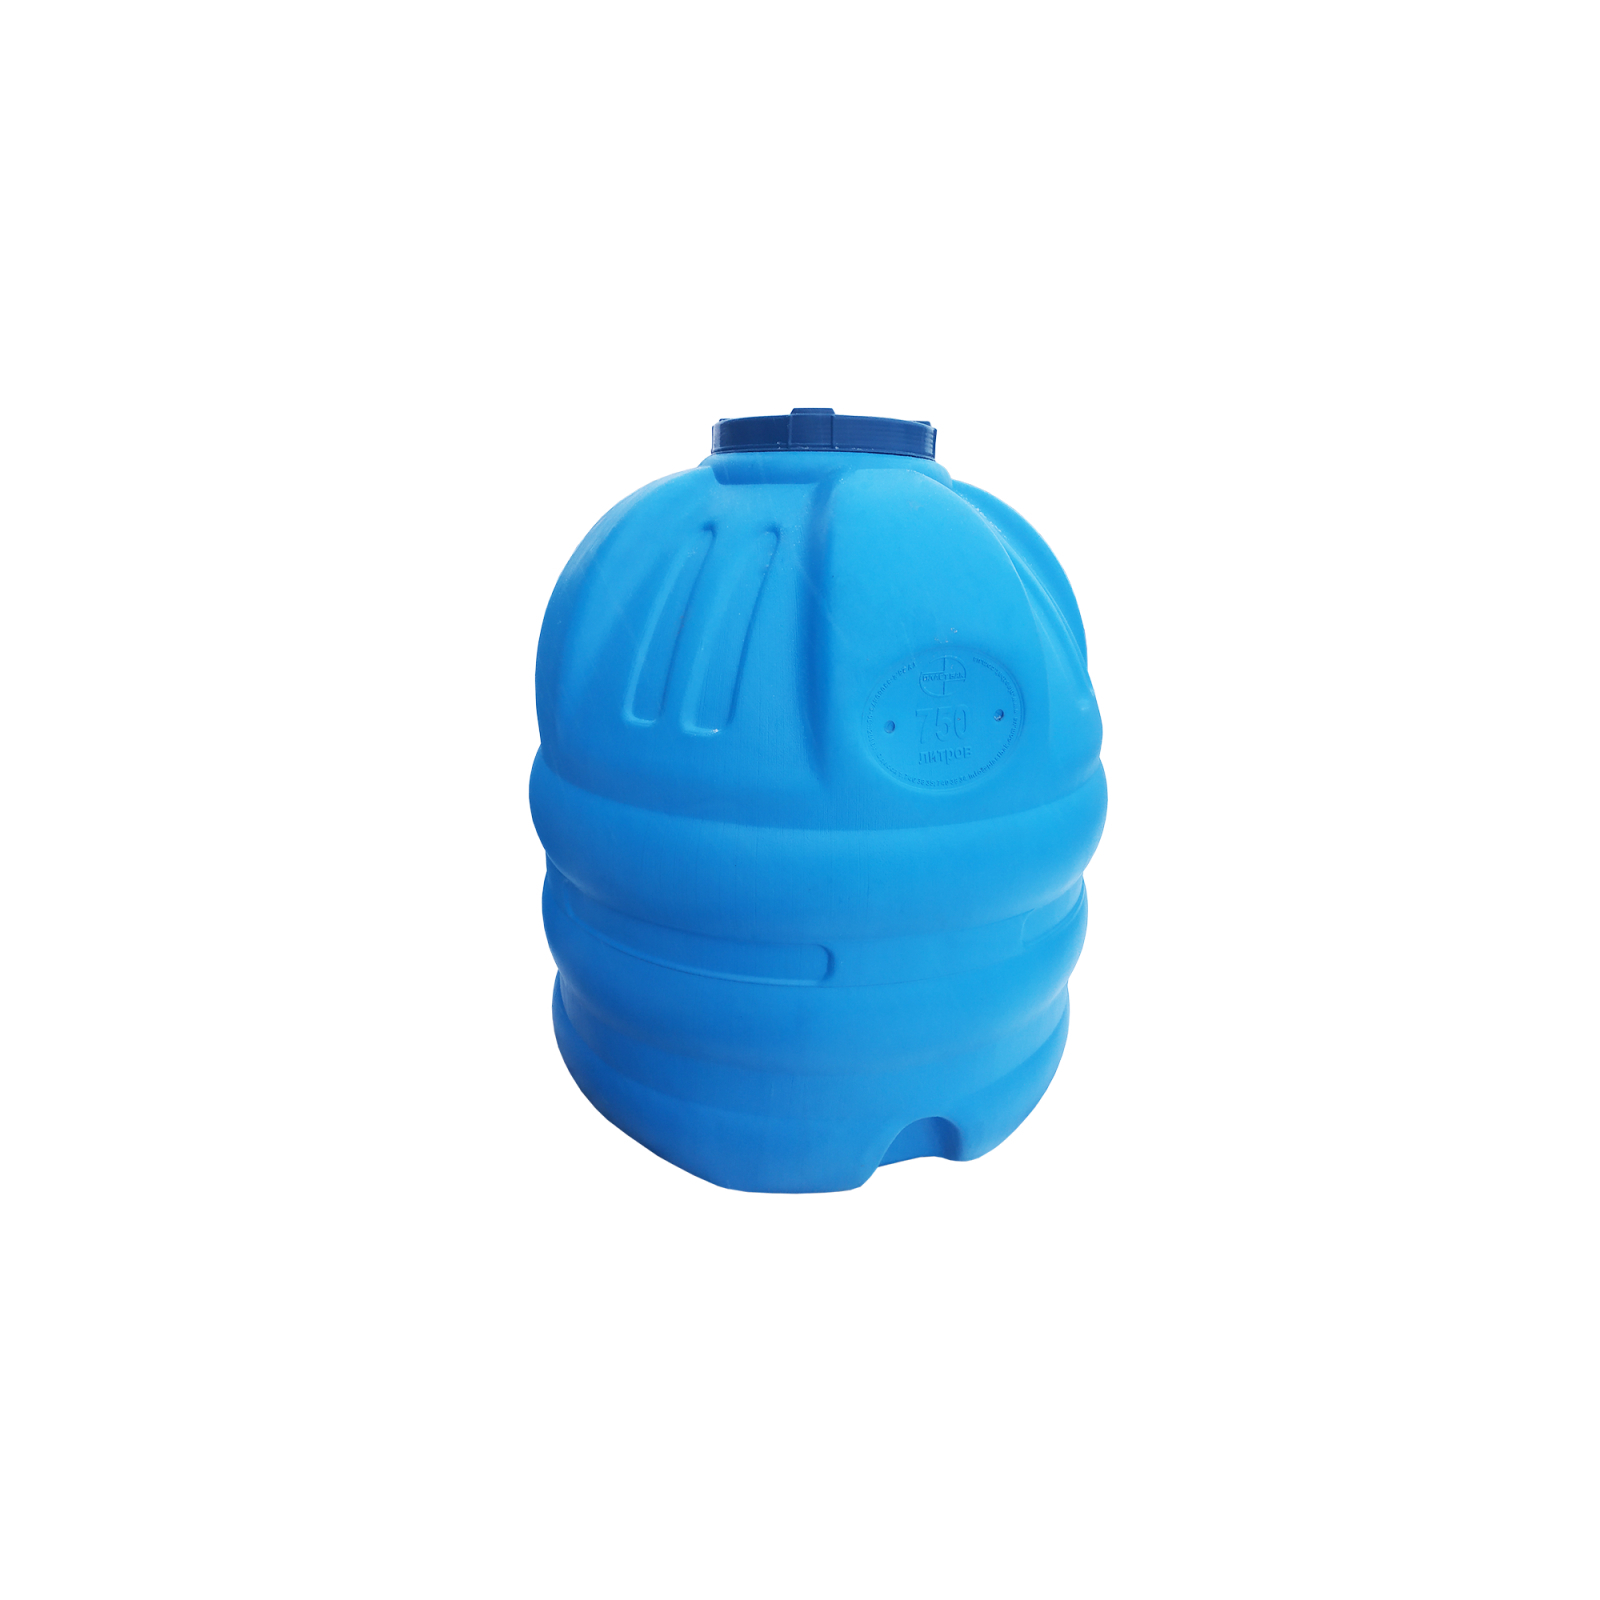 Емкость для воды Пласт Бак вертикальная пищевая 750 л синяя выдувная (6254)